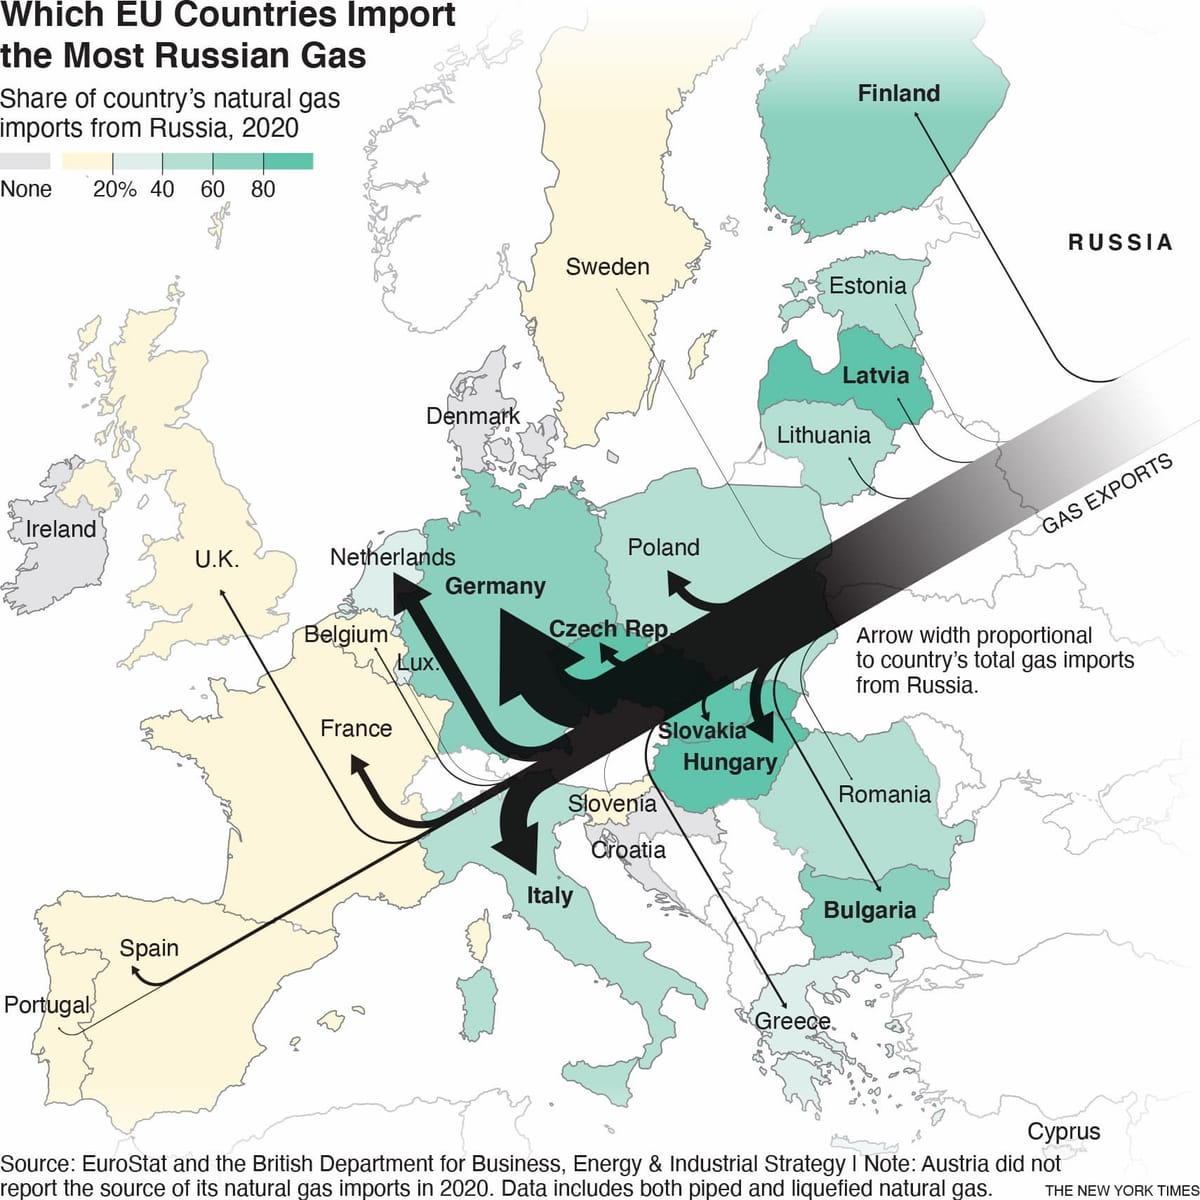 ウクライナ紛争は欧州のロシア依存をどう変えるか？